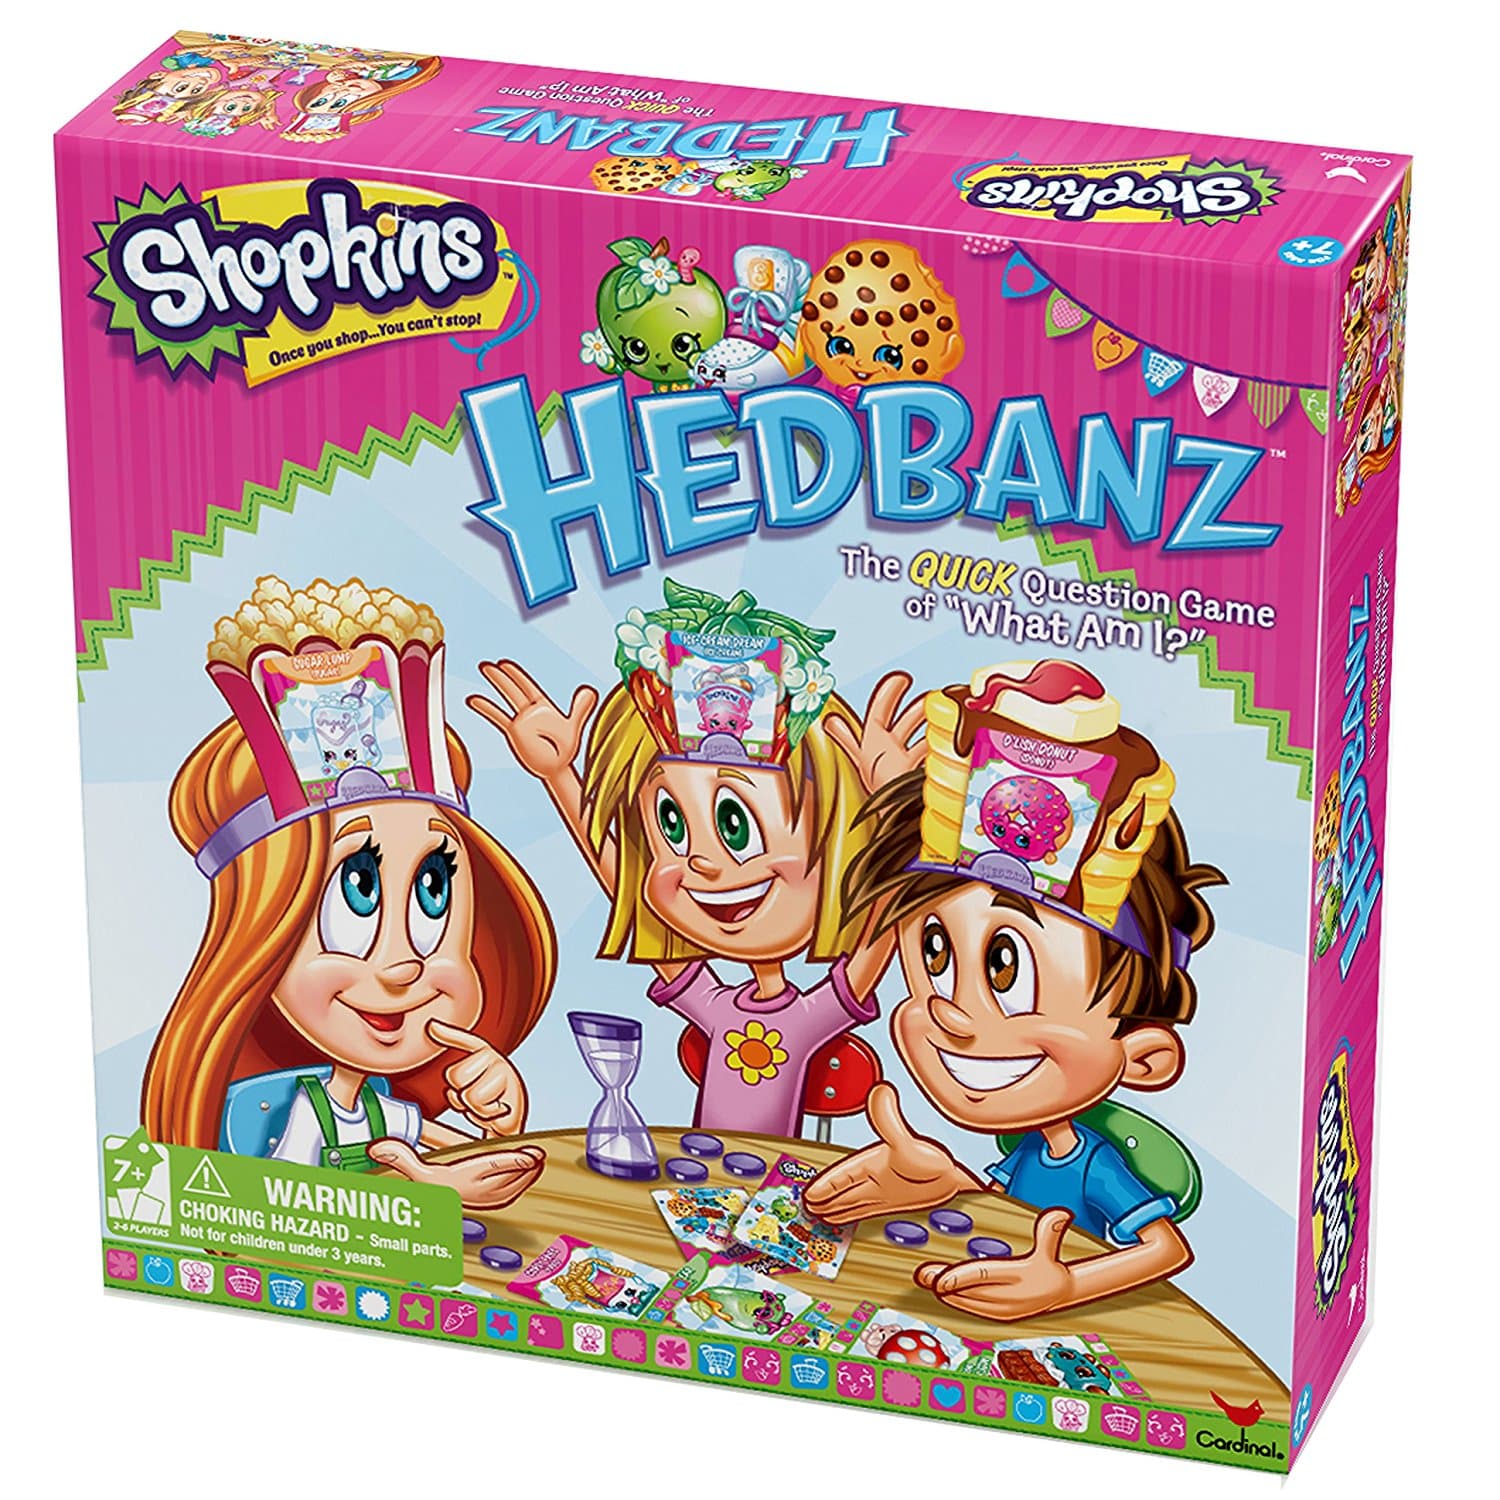 LIGHTNING DEAL ALERT! Shopkins Hedbanz Board Game – 48% off!